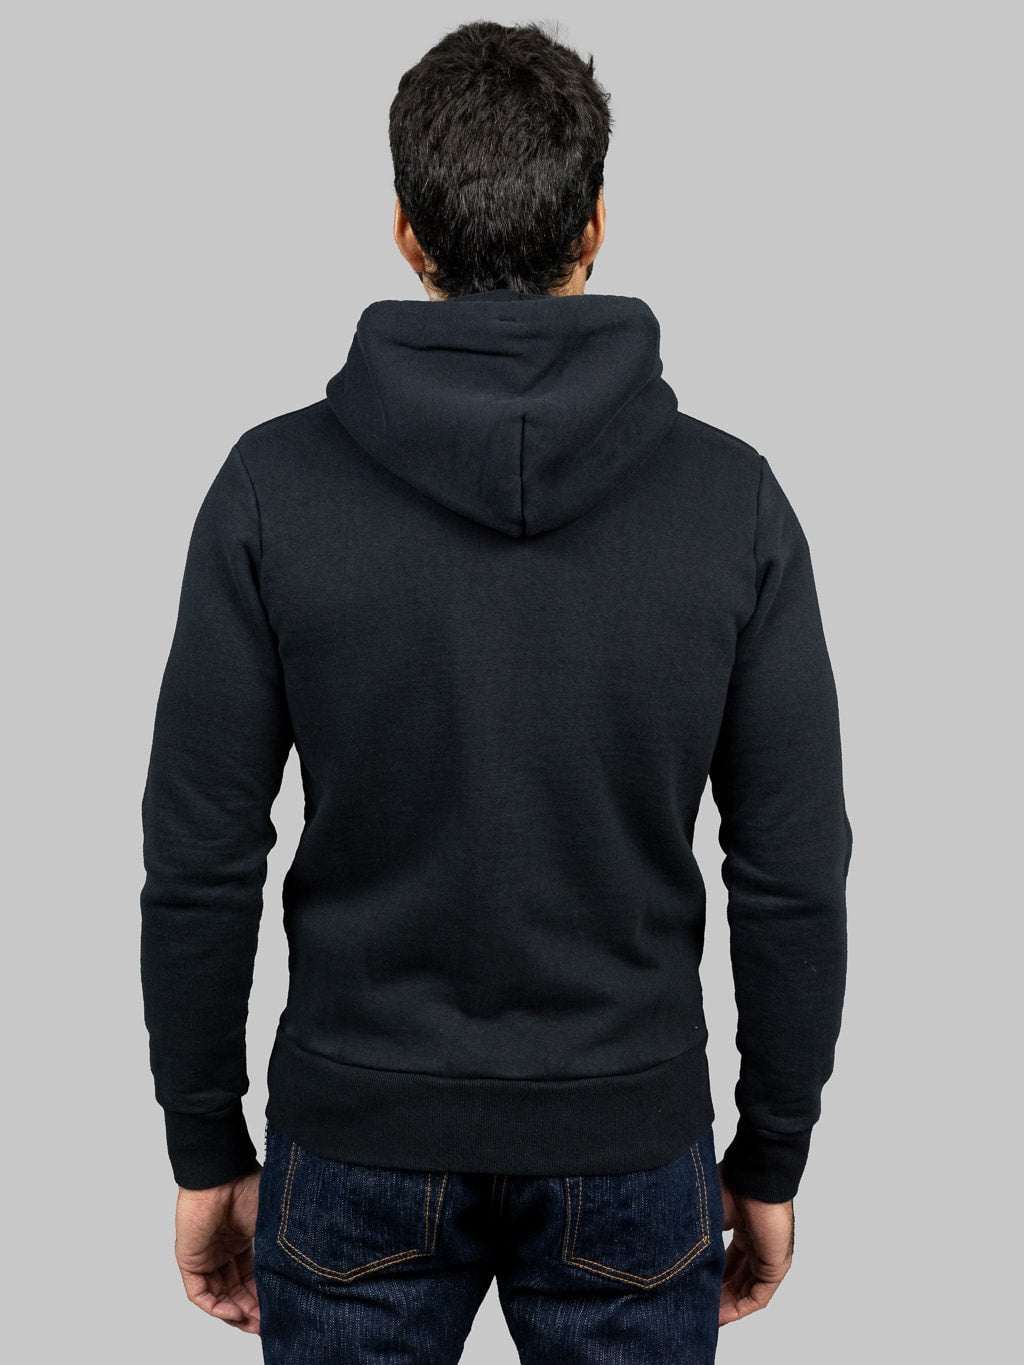 UES hoodie Zip Parka black model back fit